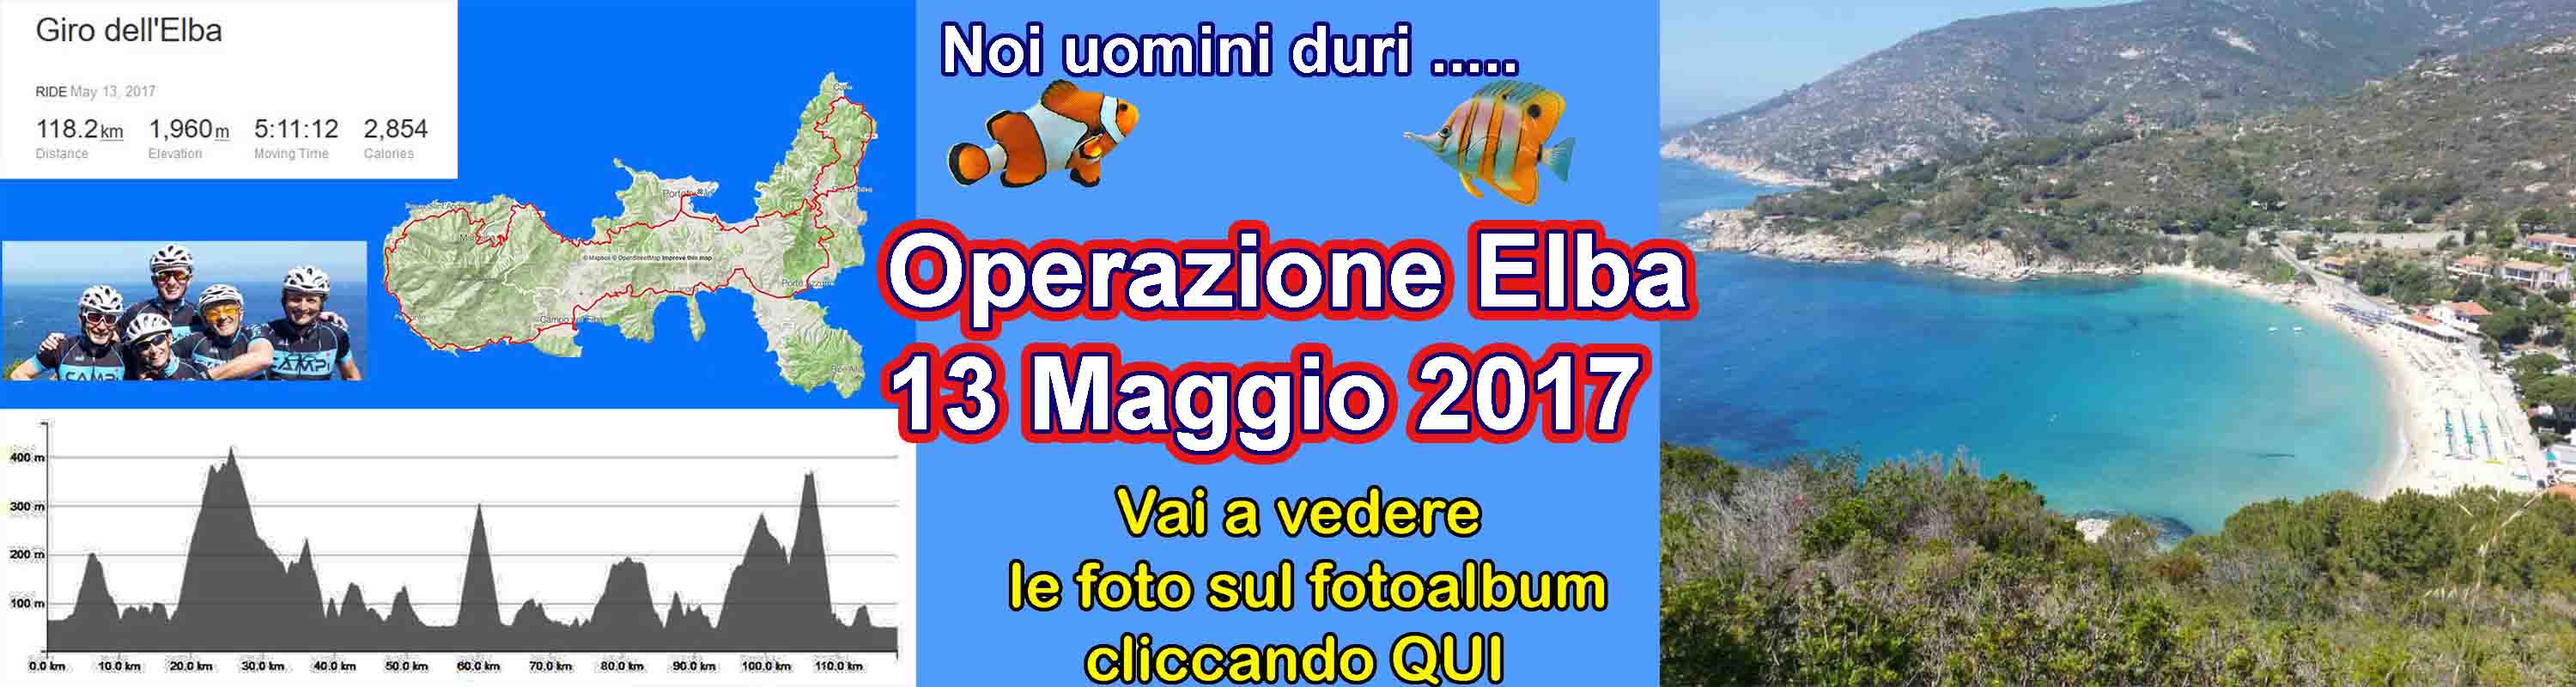 Banner_Operazione_Elba